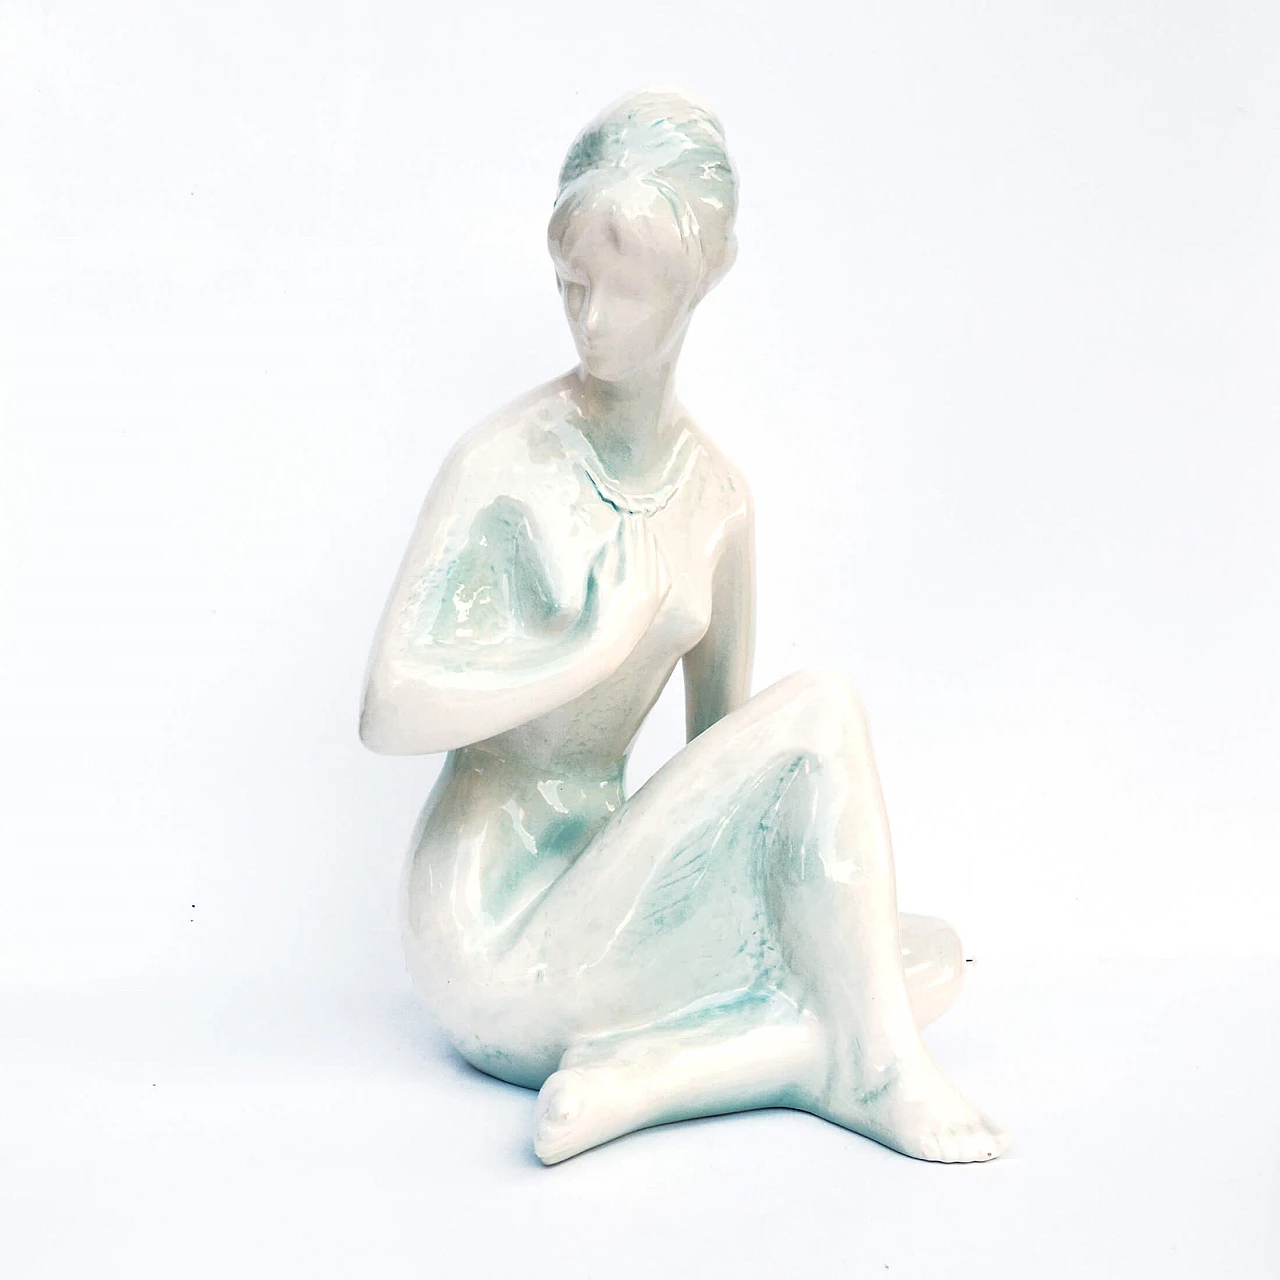 Female nude sculpture by Kokrda Jihokera Bechyně, 1960s 1